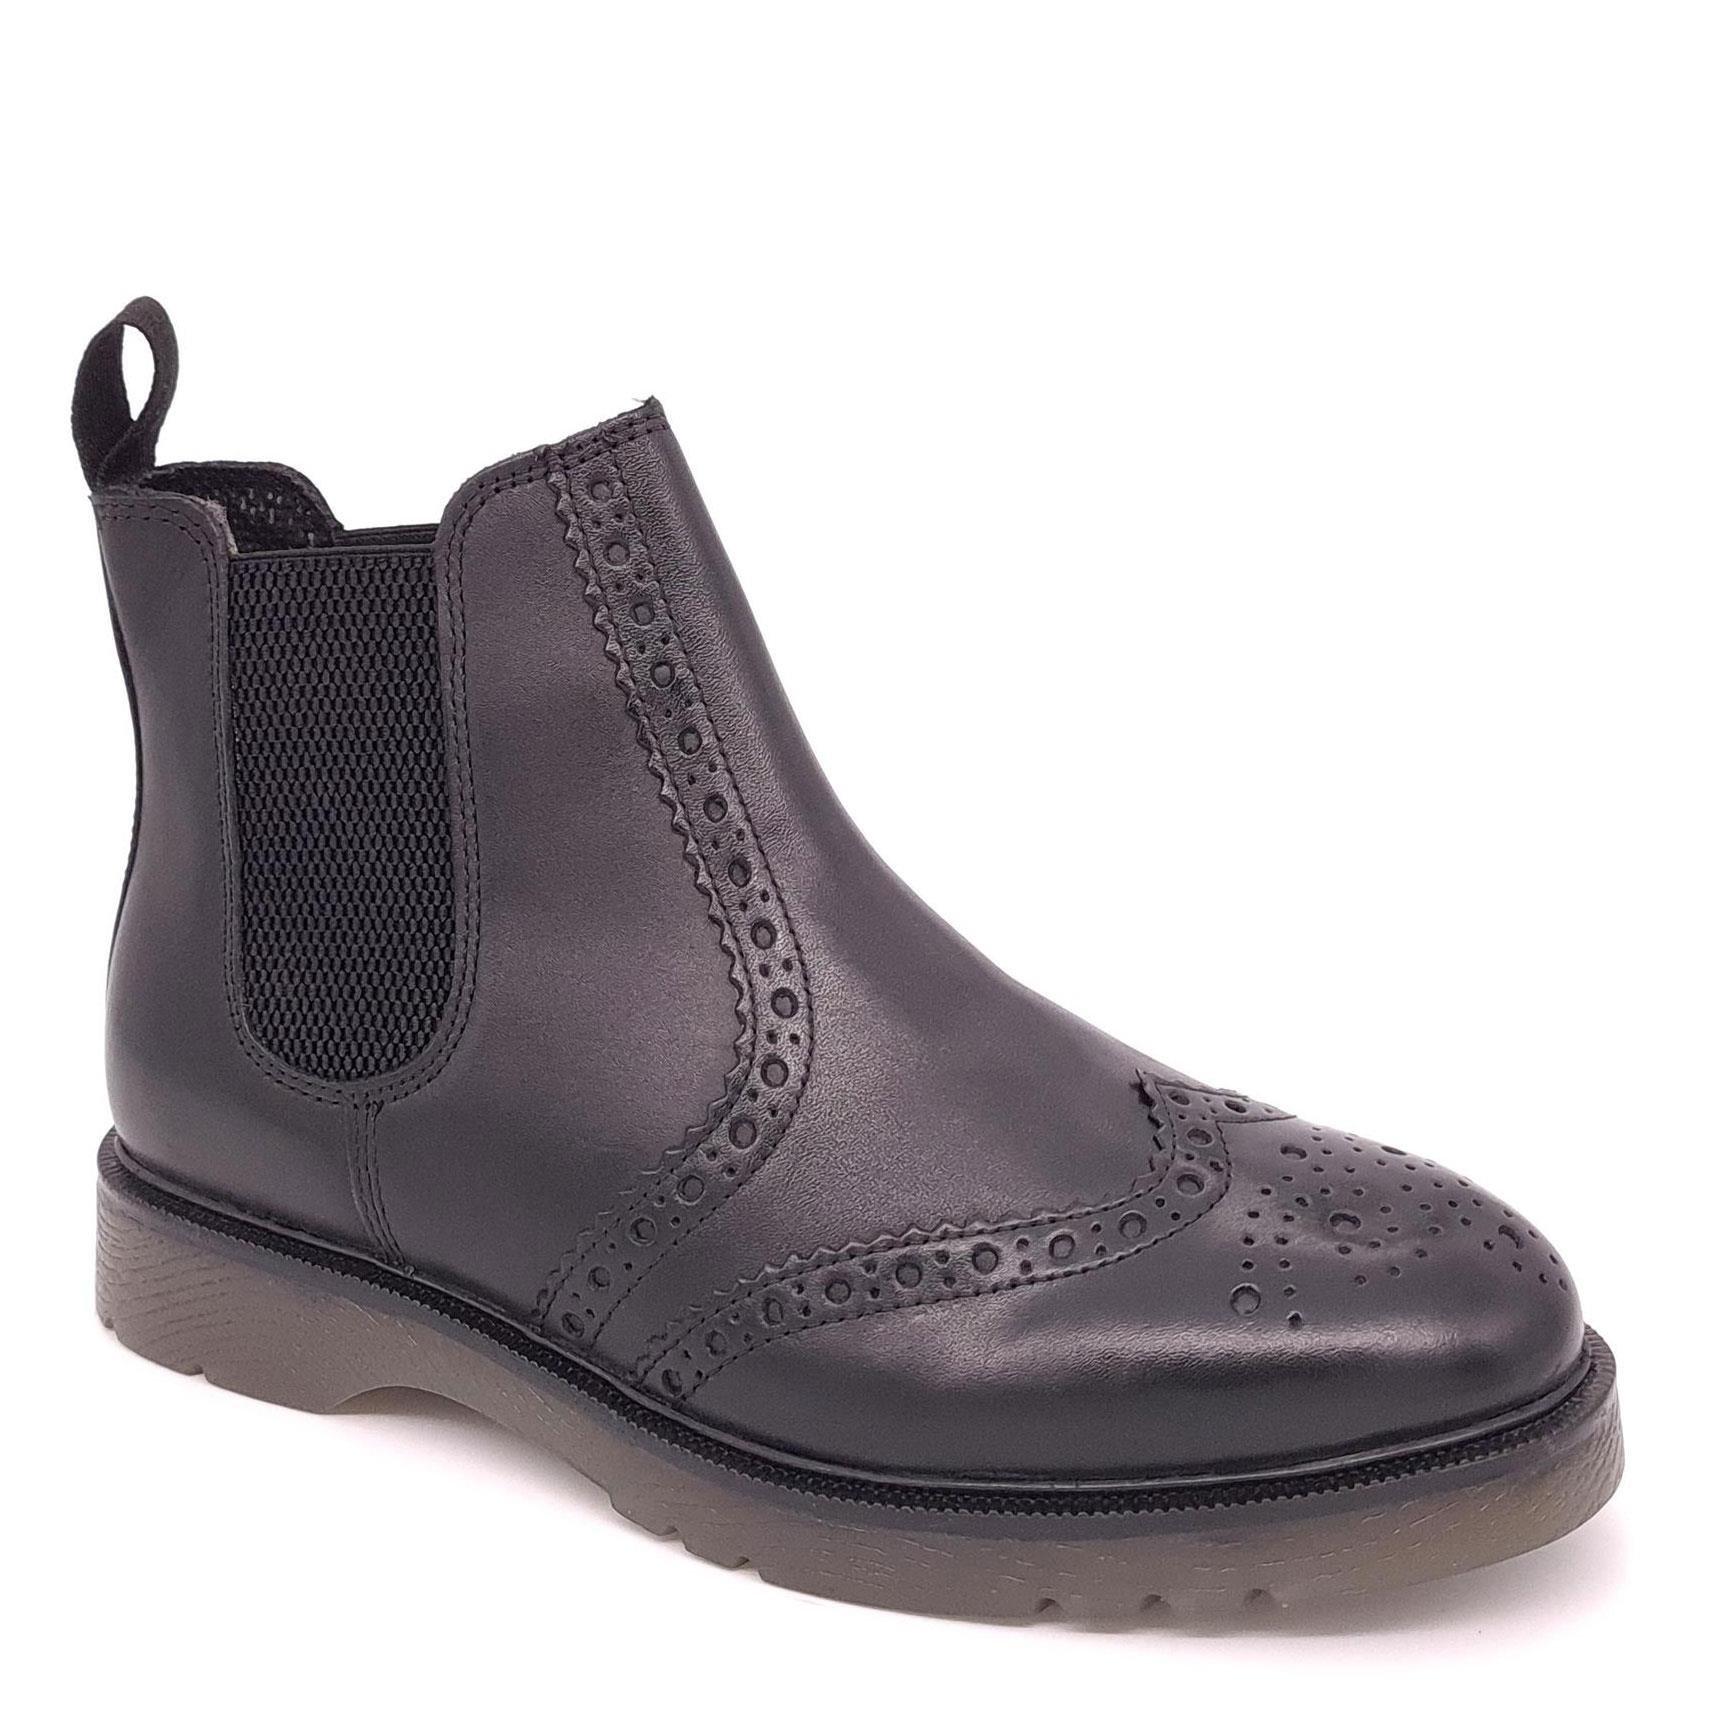 Кожаные ботинки челси с эффектом броги Warkton Frank James, черный кожаные ботинки челси с эффектом броги cheltenham frank james коричневый